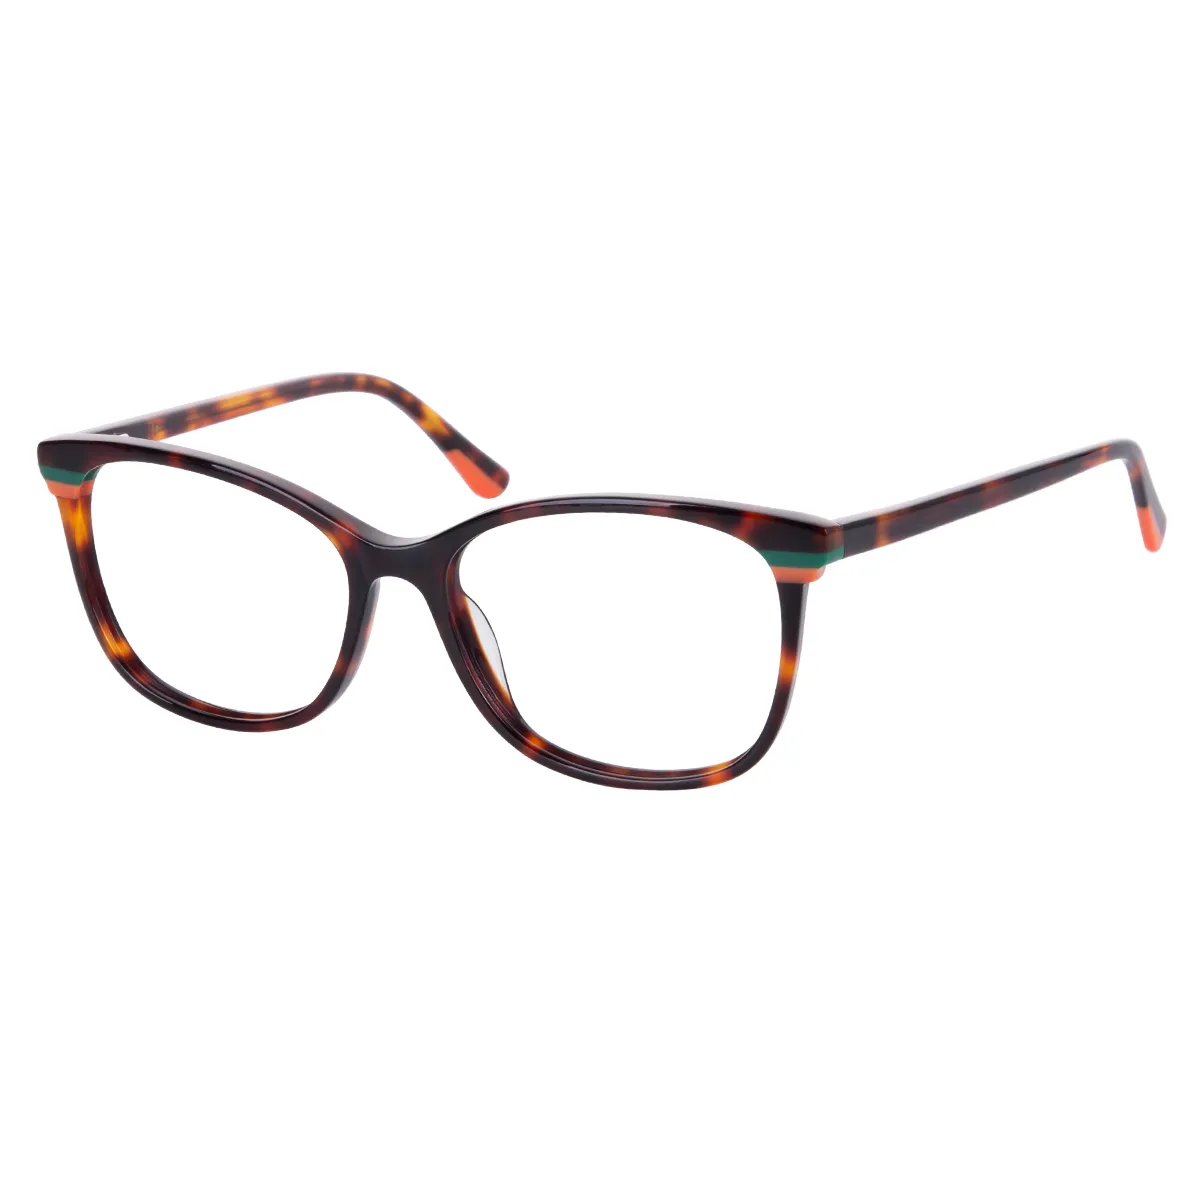 Kimberly - Oval Tortoiseshell Glasses for Women